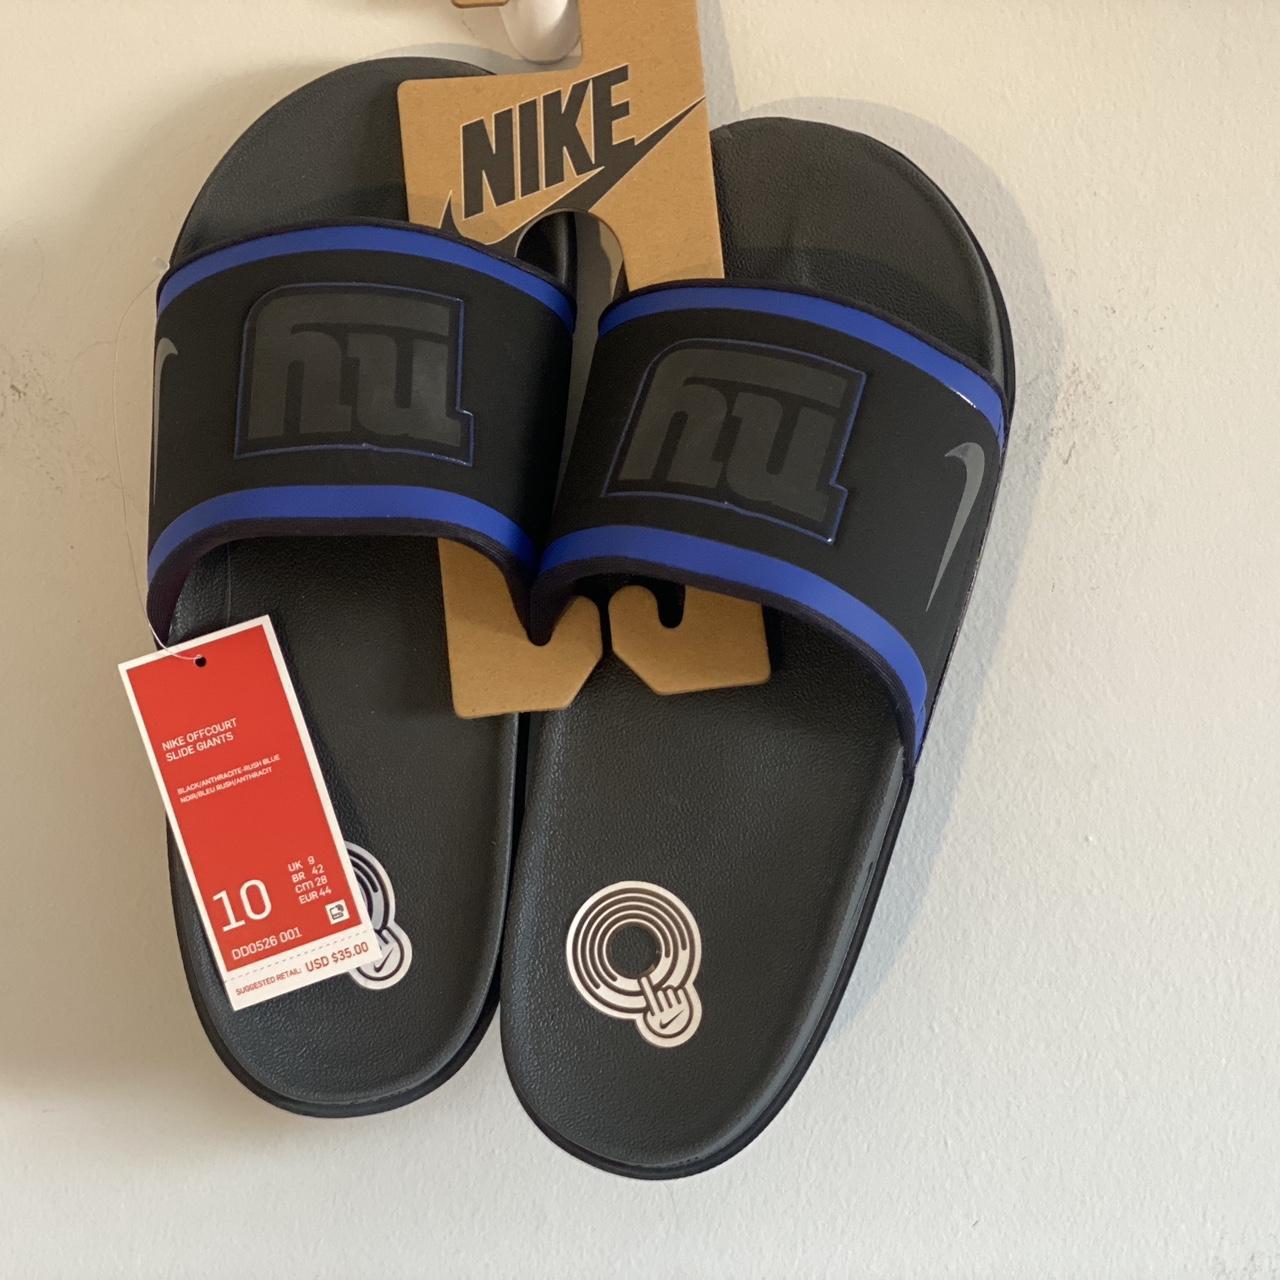 Nike Flip Flop White Slides Beach Pool Sandals Slippers Size06 (40er) Uk |  eBay